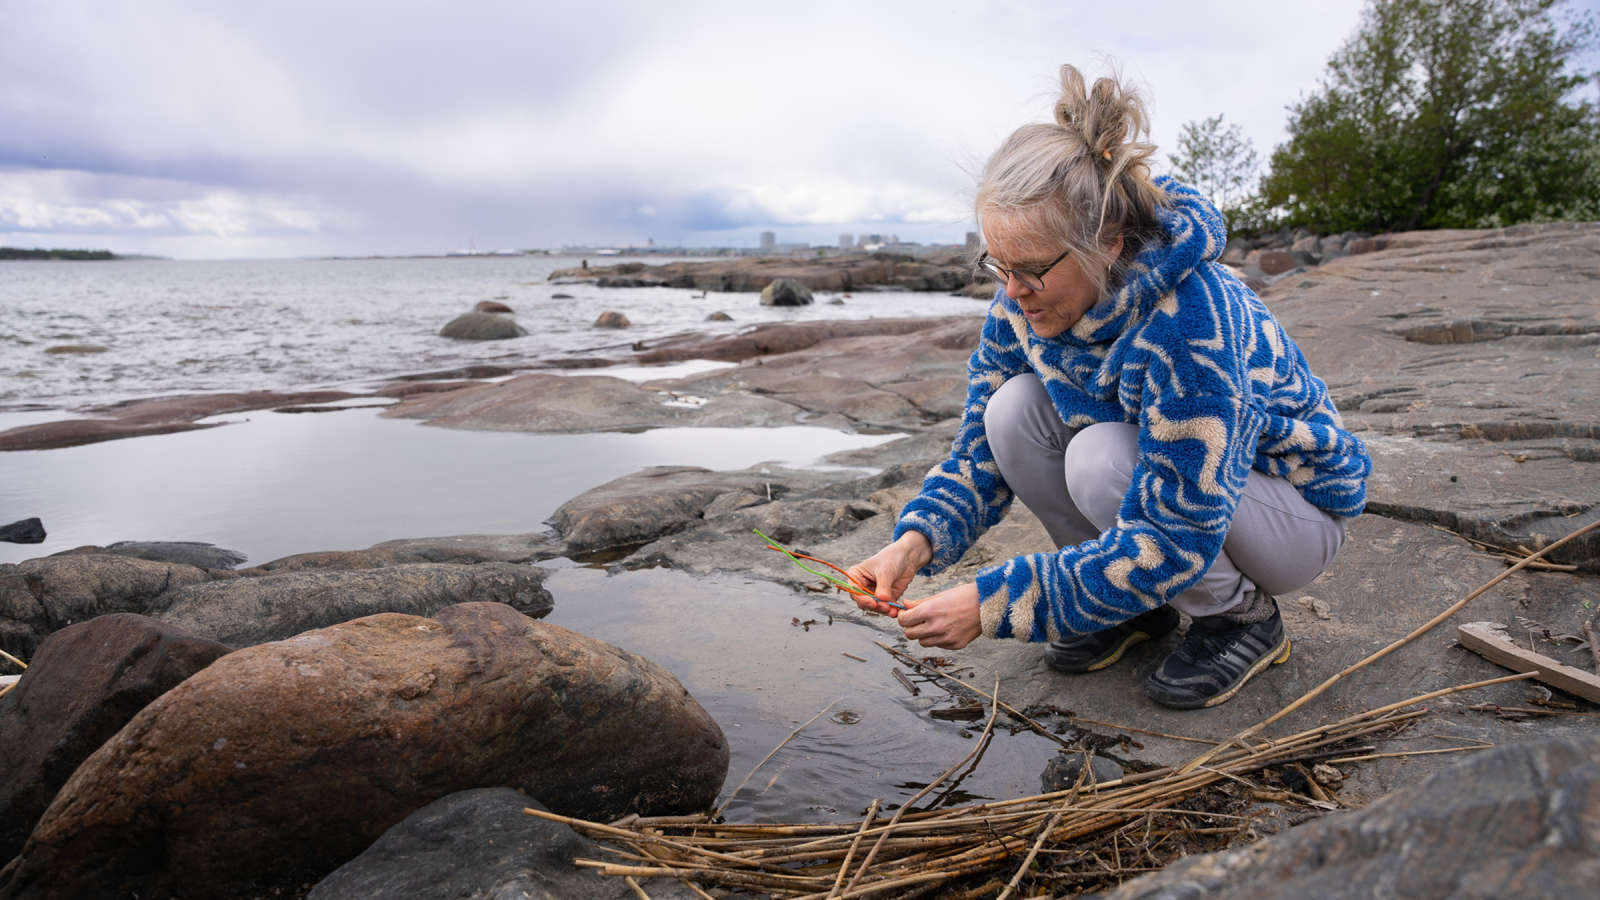 Kuvataitelija Tuula Närhinen on kyykistyneenä meren rannan kalliolla. Kädessään hänellä on rantaan huuhtoutunutta muovia.